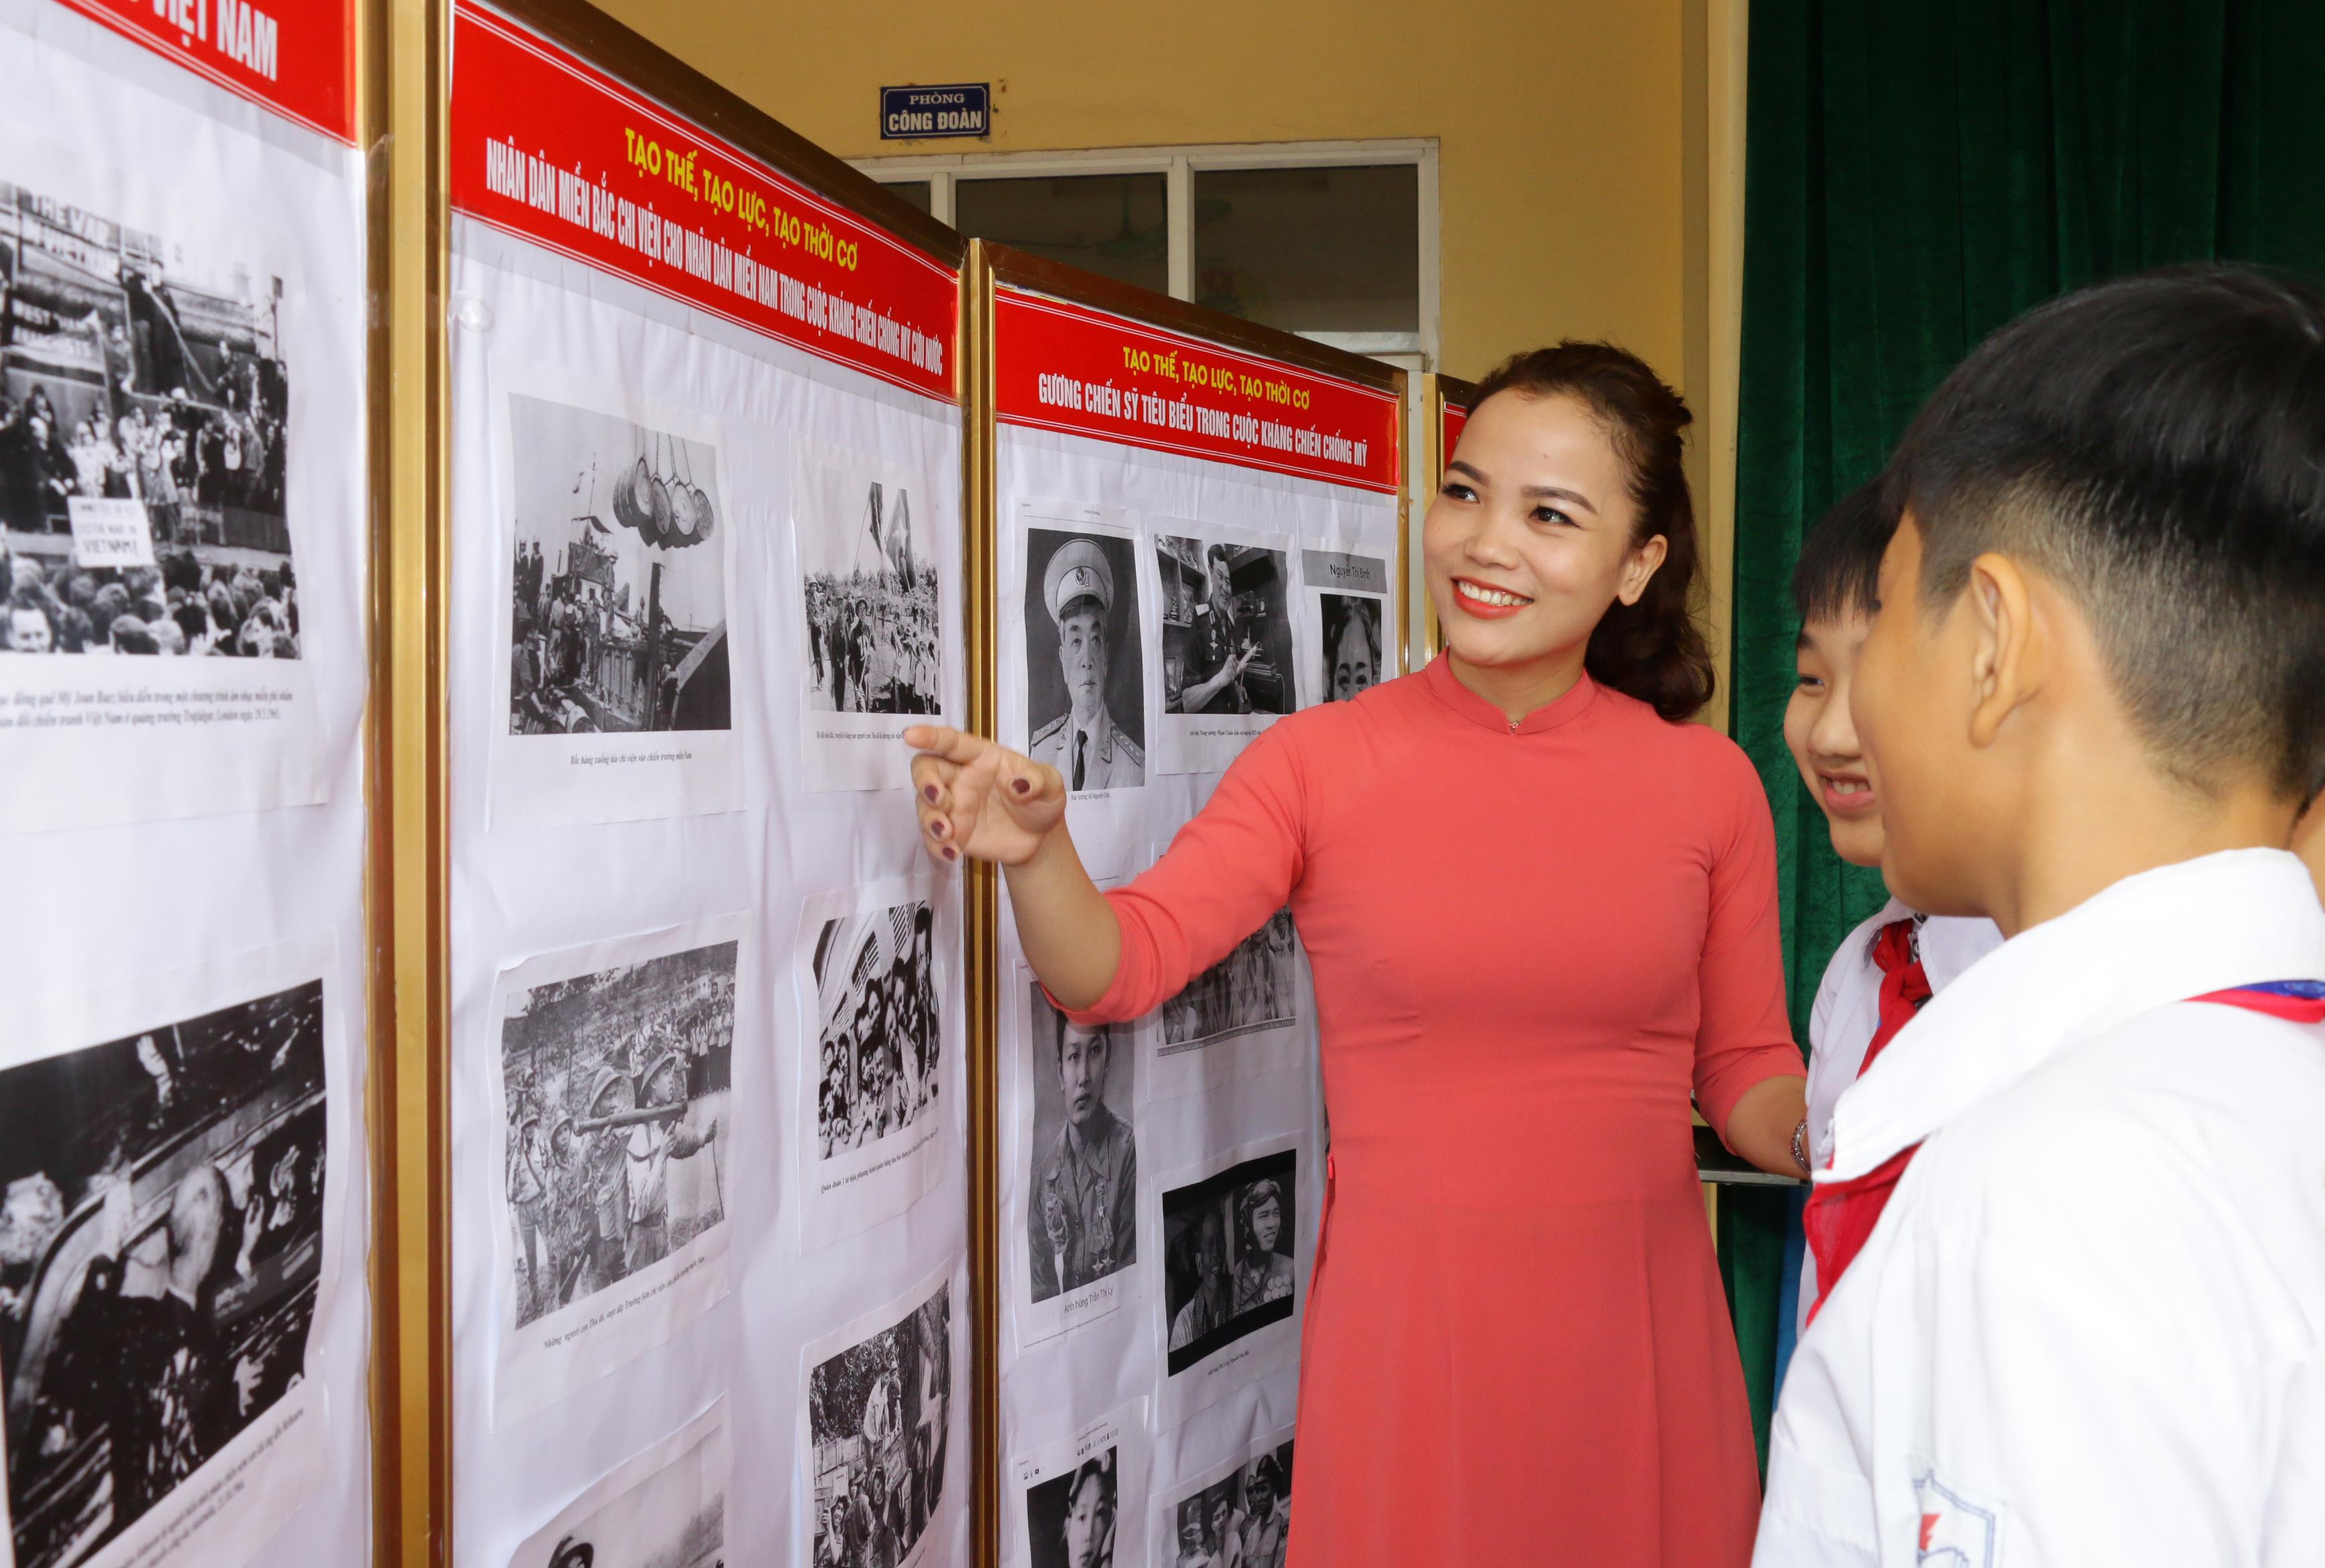 Giáo dục lý tưởng sống cho học sinh thông qua các bài học lịch sử ở Trường THCS Kim Liên - Nam Đàn. Ảnh: Mỹ Hà